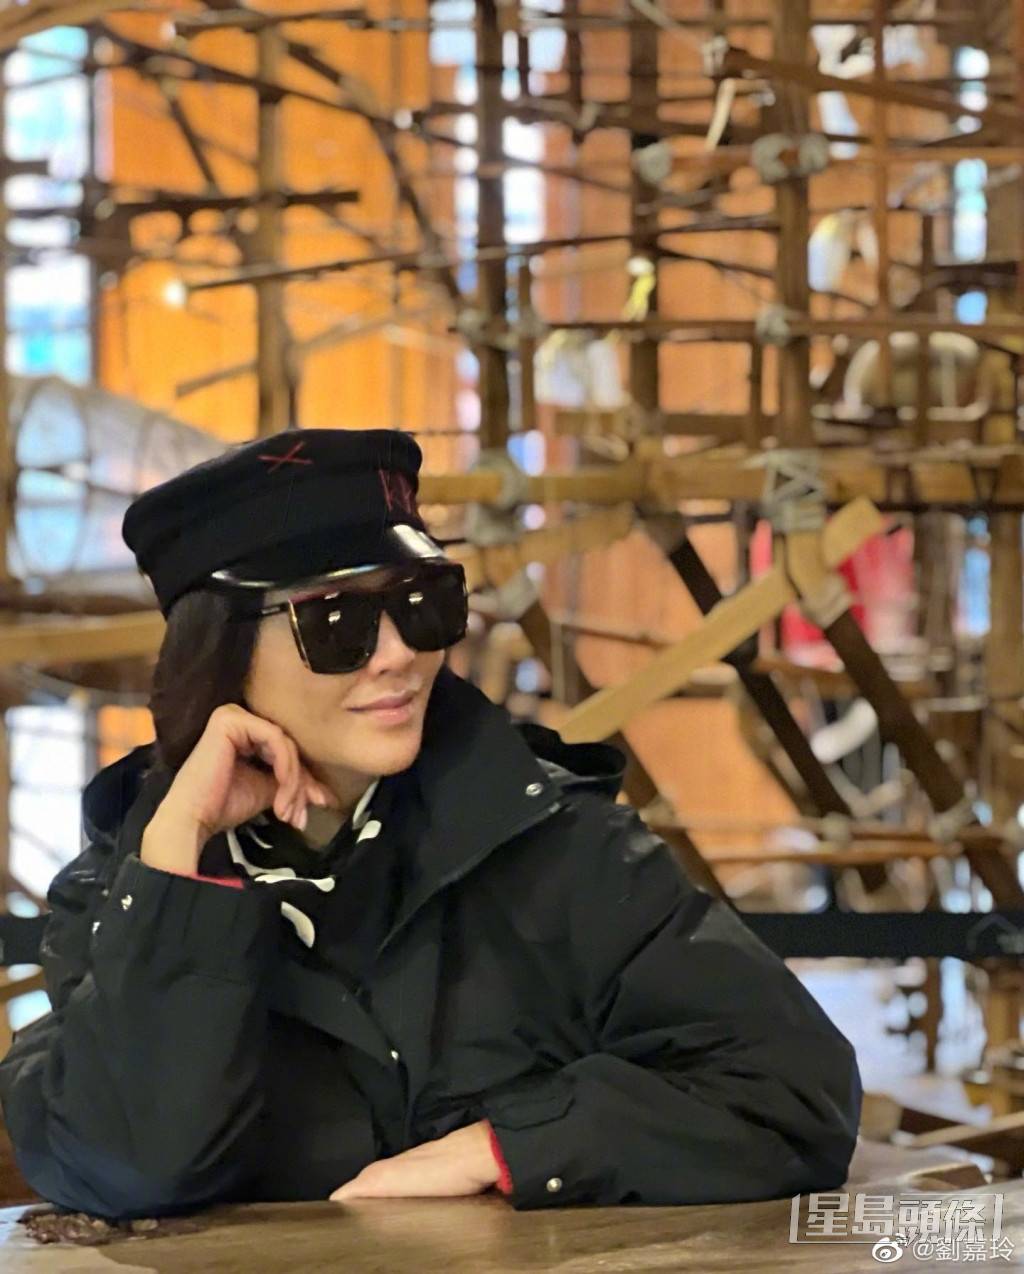 刘嘉玲也不时在IG贴出戴帽及太阳眼镜的照片。